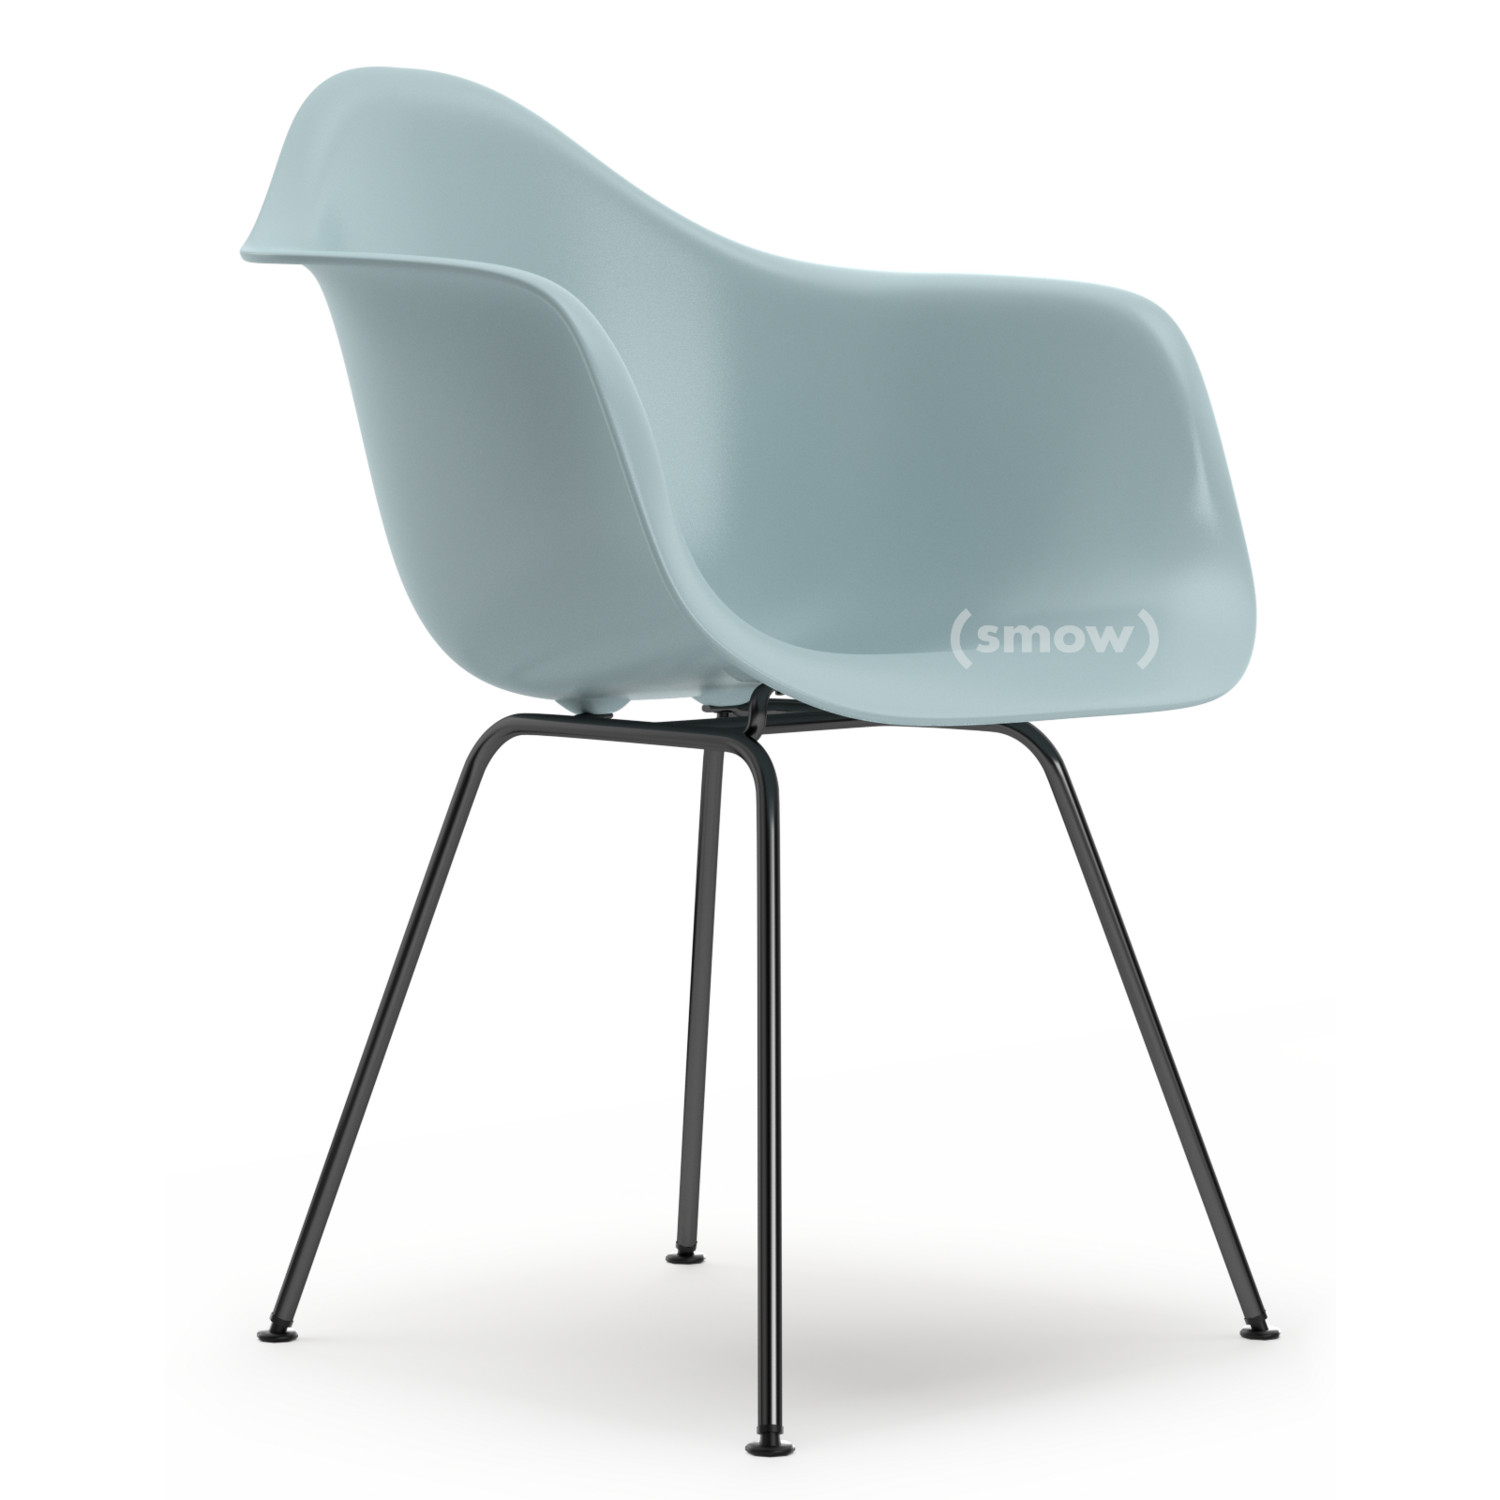 Seat cushion - felt cushion for Eames Plastic Arm Chairs (DAR / DAW), DAX  Parkhaus Berlin